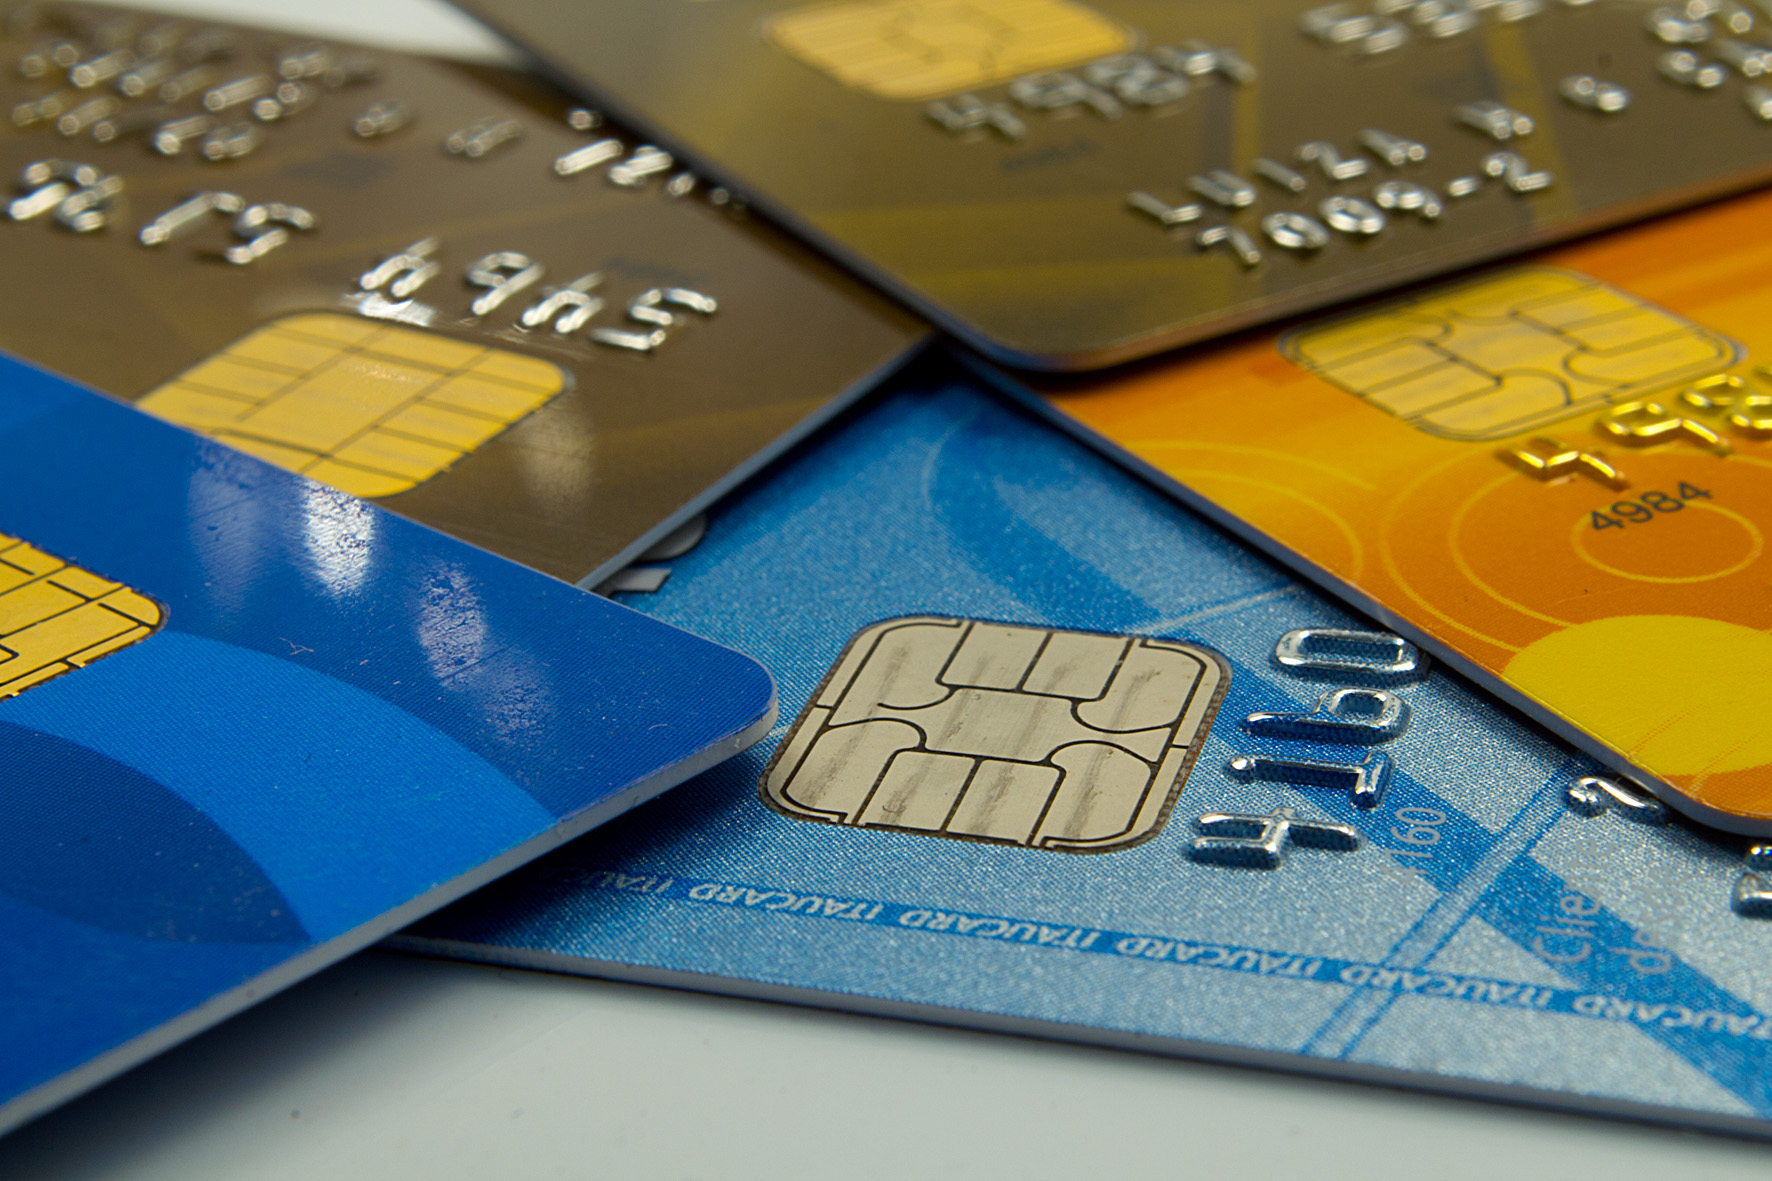 Compras com cartão de crédito e débito crescem 9% em 2015 (Foto: Marcos Santos/USP Imagens)